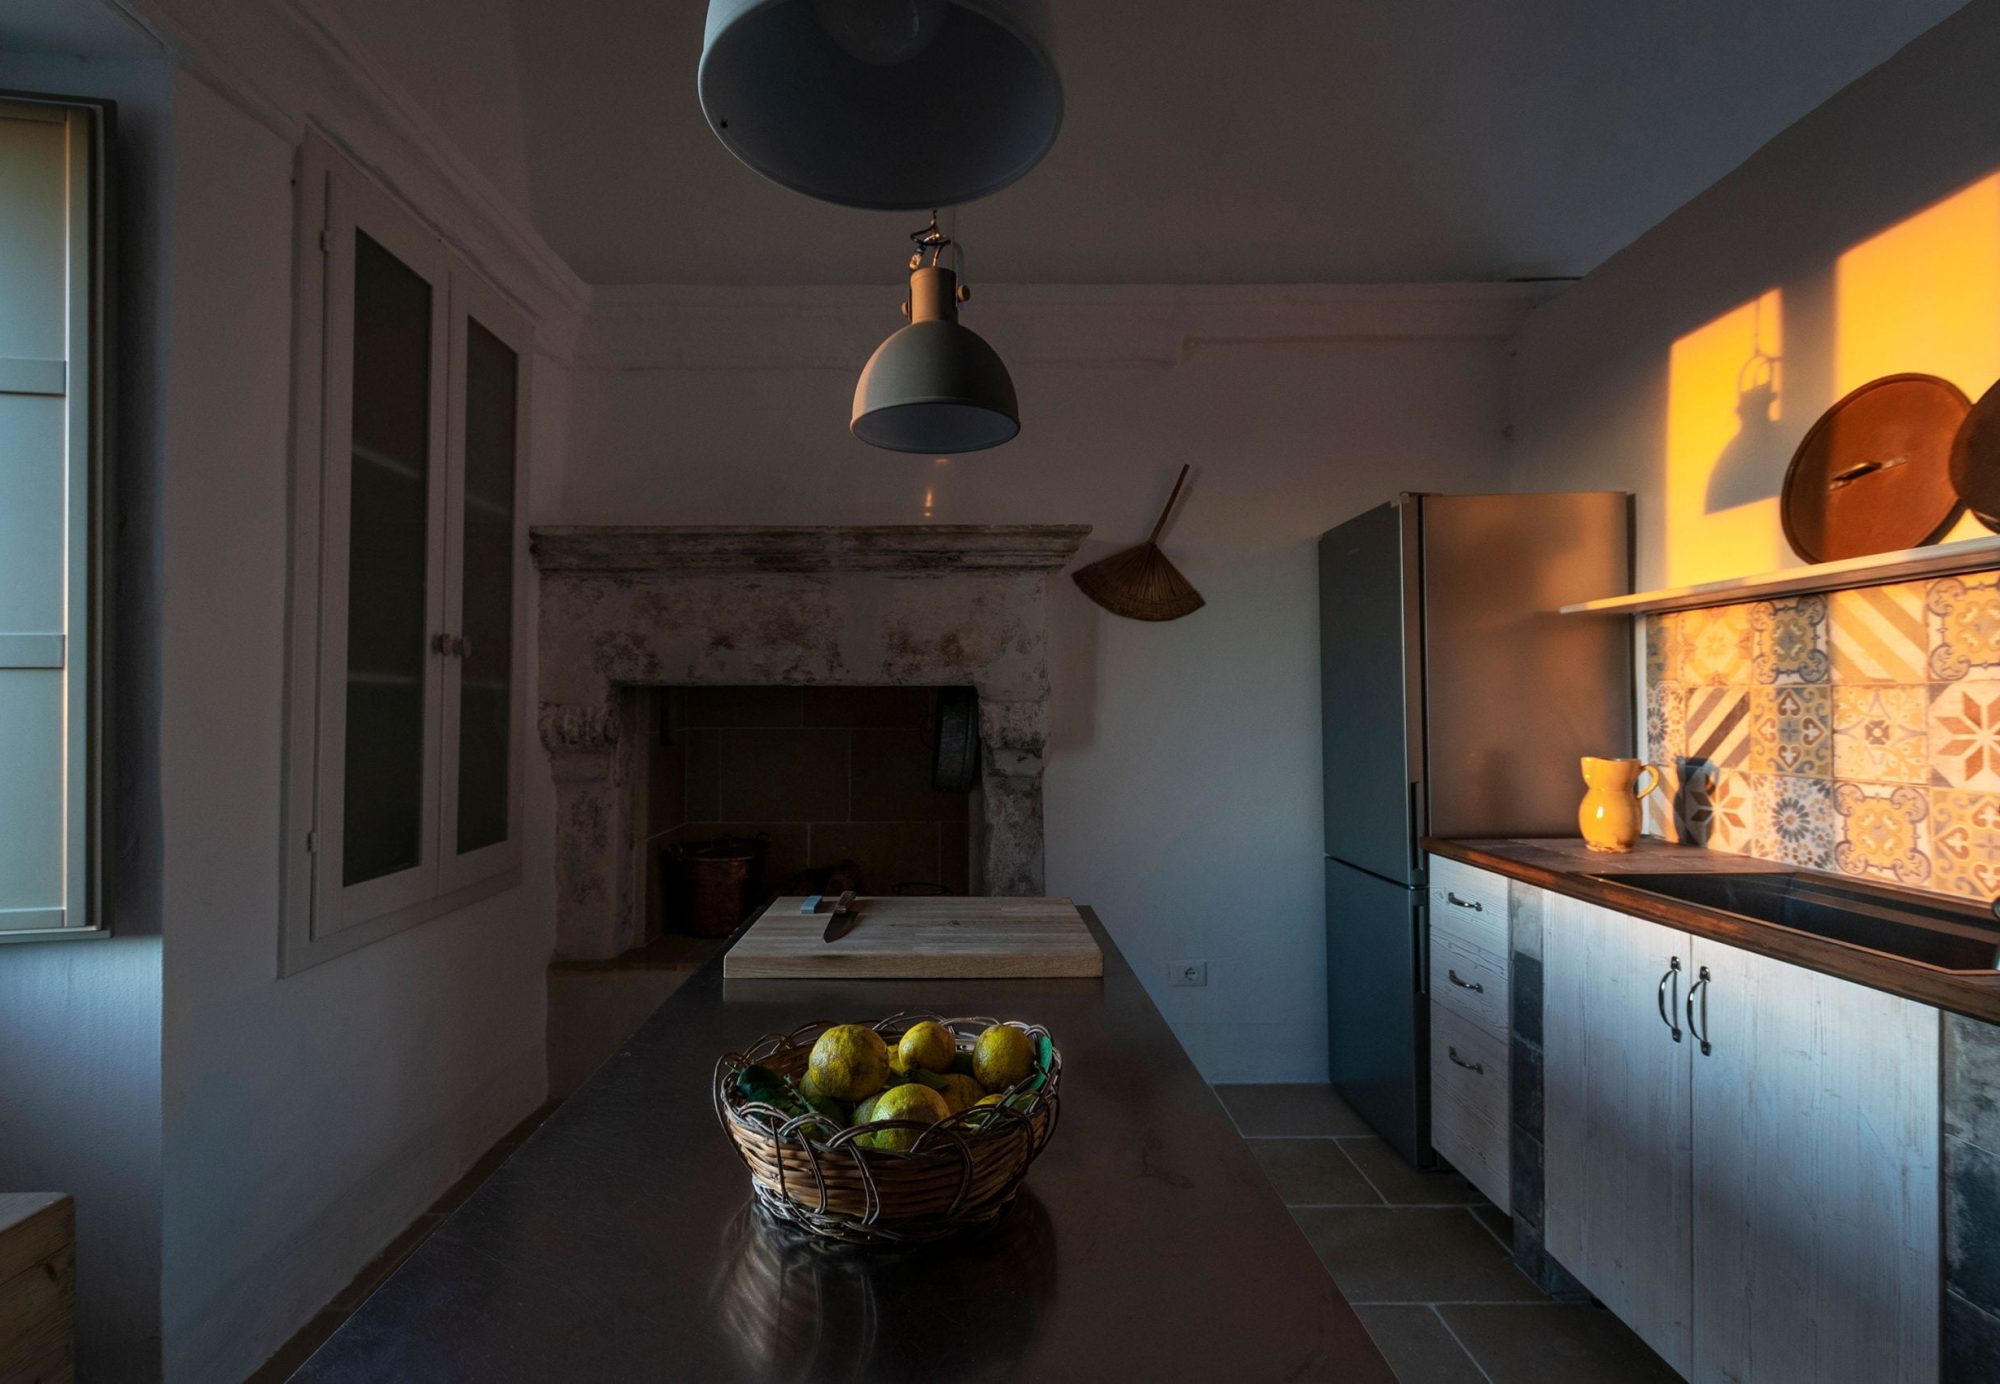 Galeta Masseria, cucina (mobile con frutta), camino e frigorifero